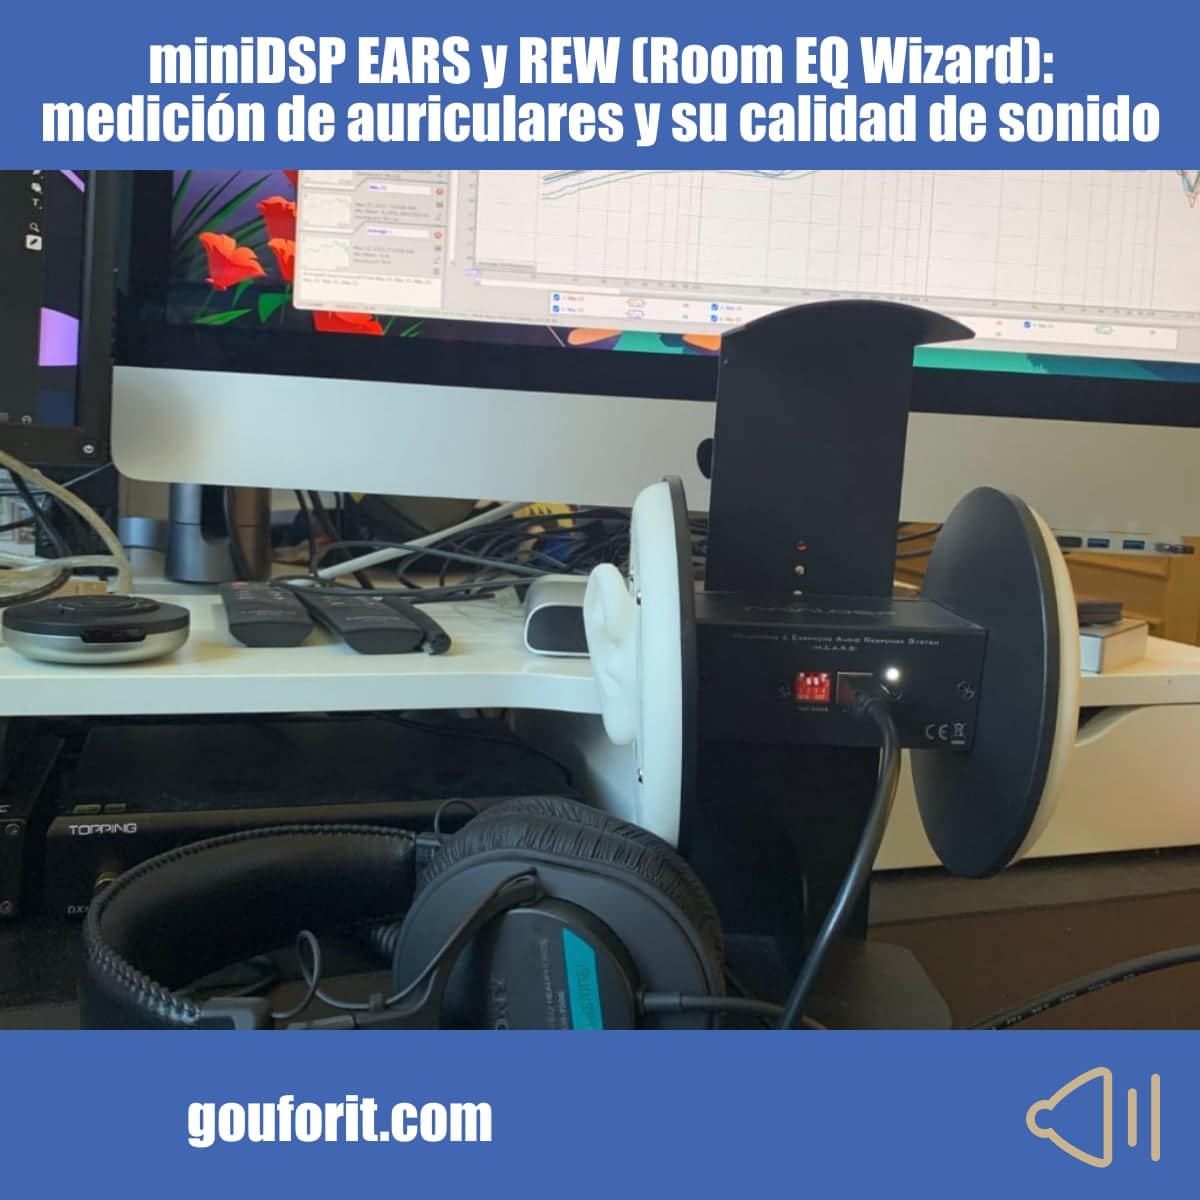 miniDSP EARS y REW (Room EQ Wizard): medición de auriculares y su calidad de sonido